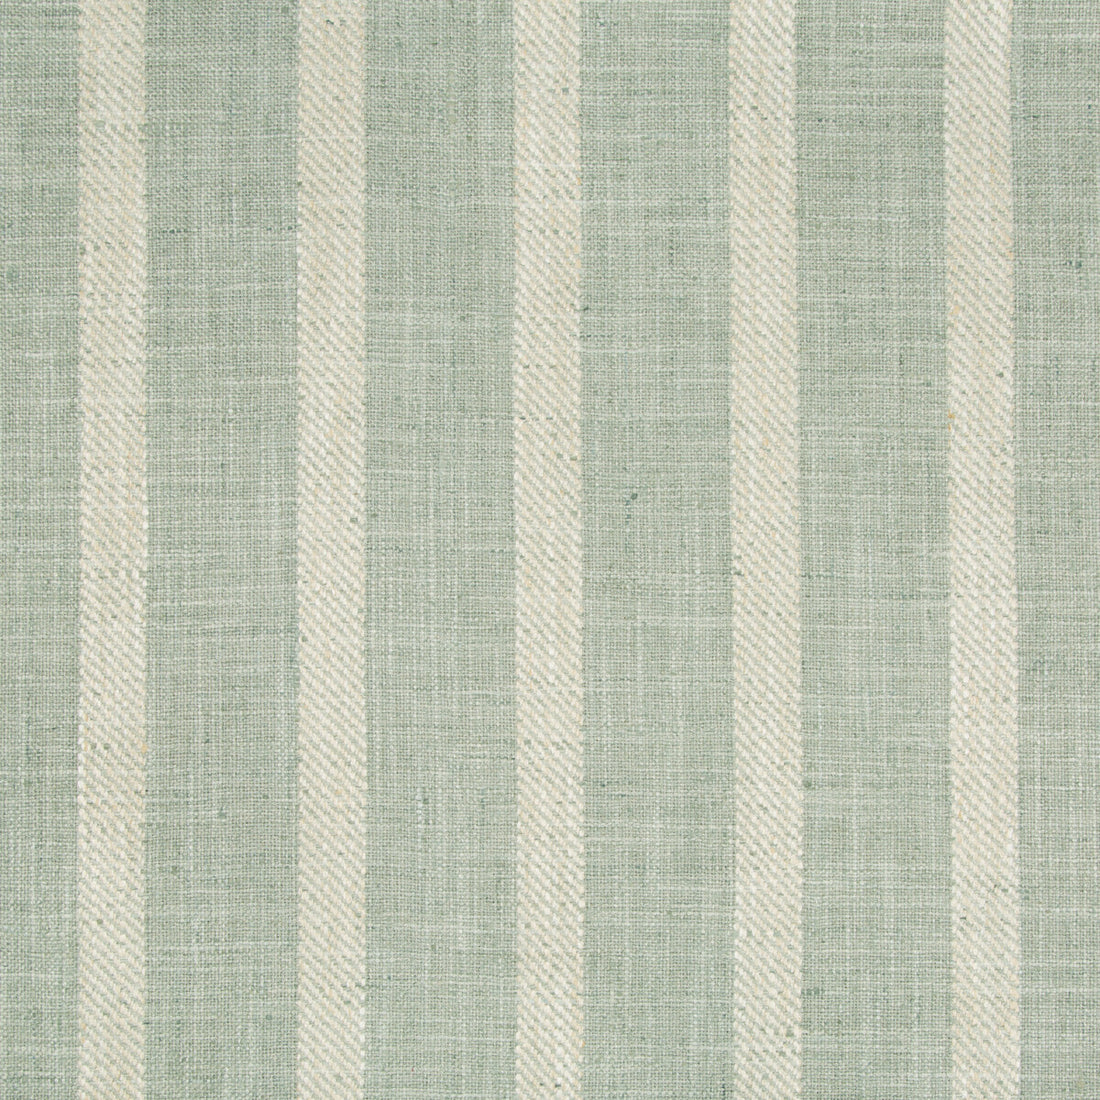 Kravet Basics fabric in 34985-23 color - pattern 34985.23.0 - by Kravet Basics